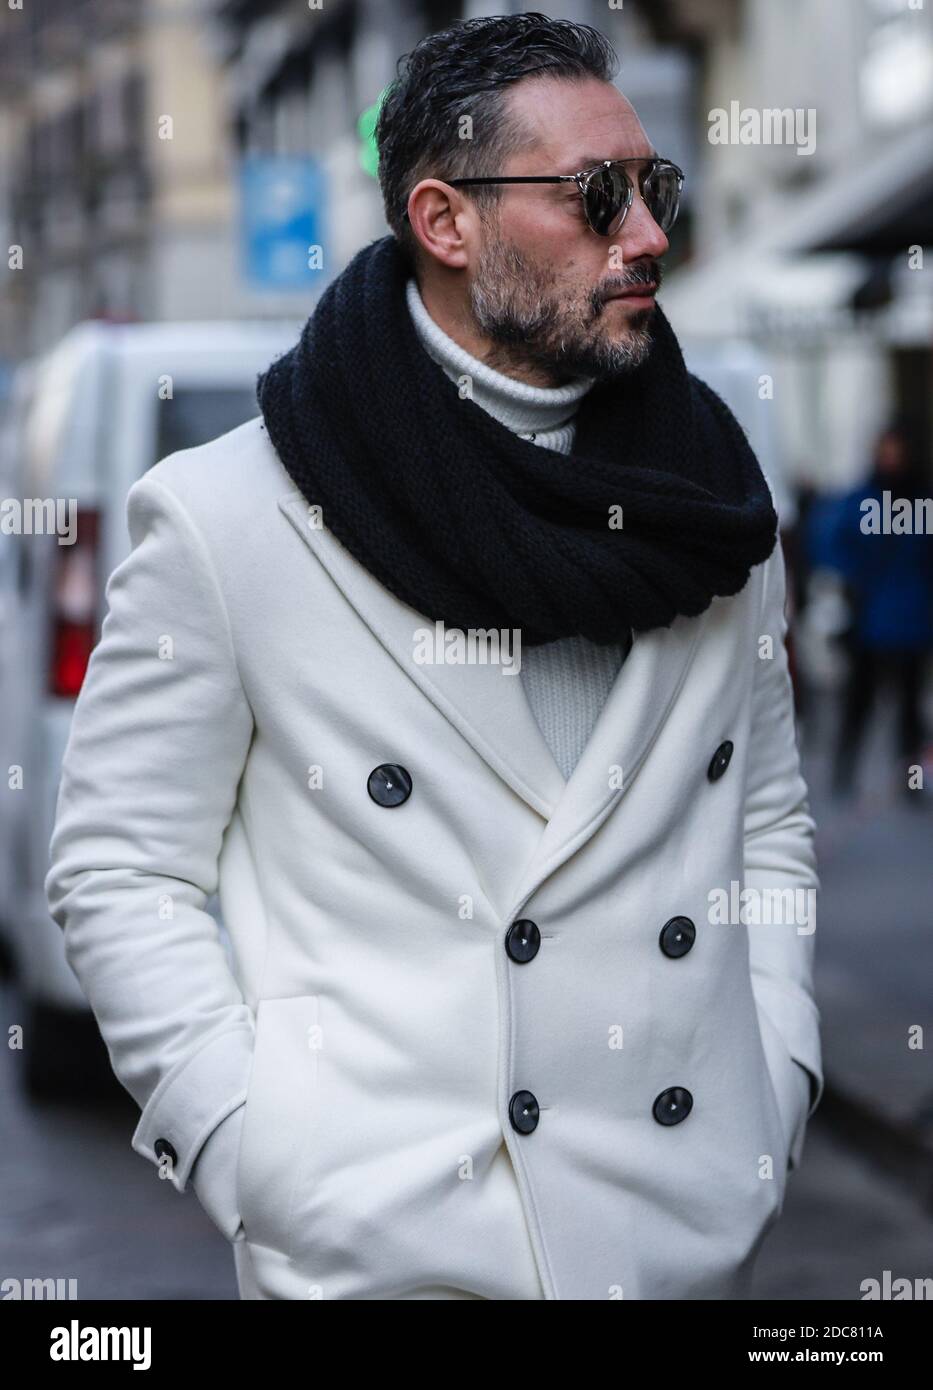 MILAN, Italie - janvier 13 2019: Hommes dans la rue à Milan. Banque D'Images